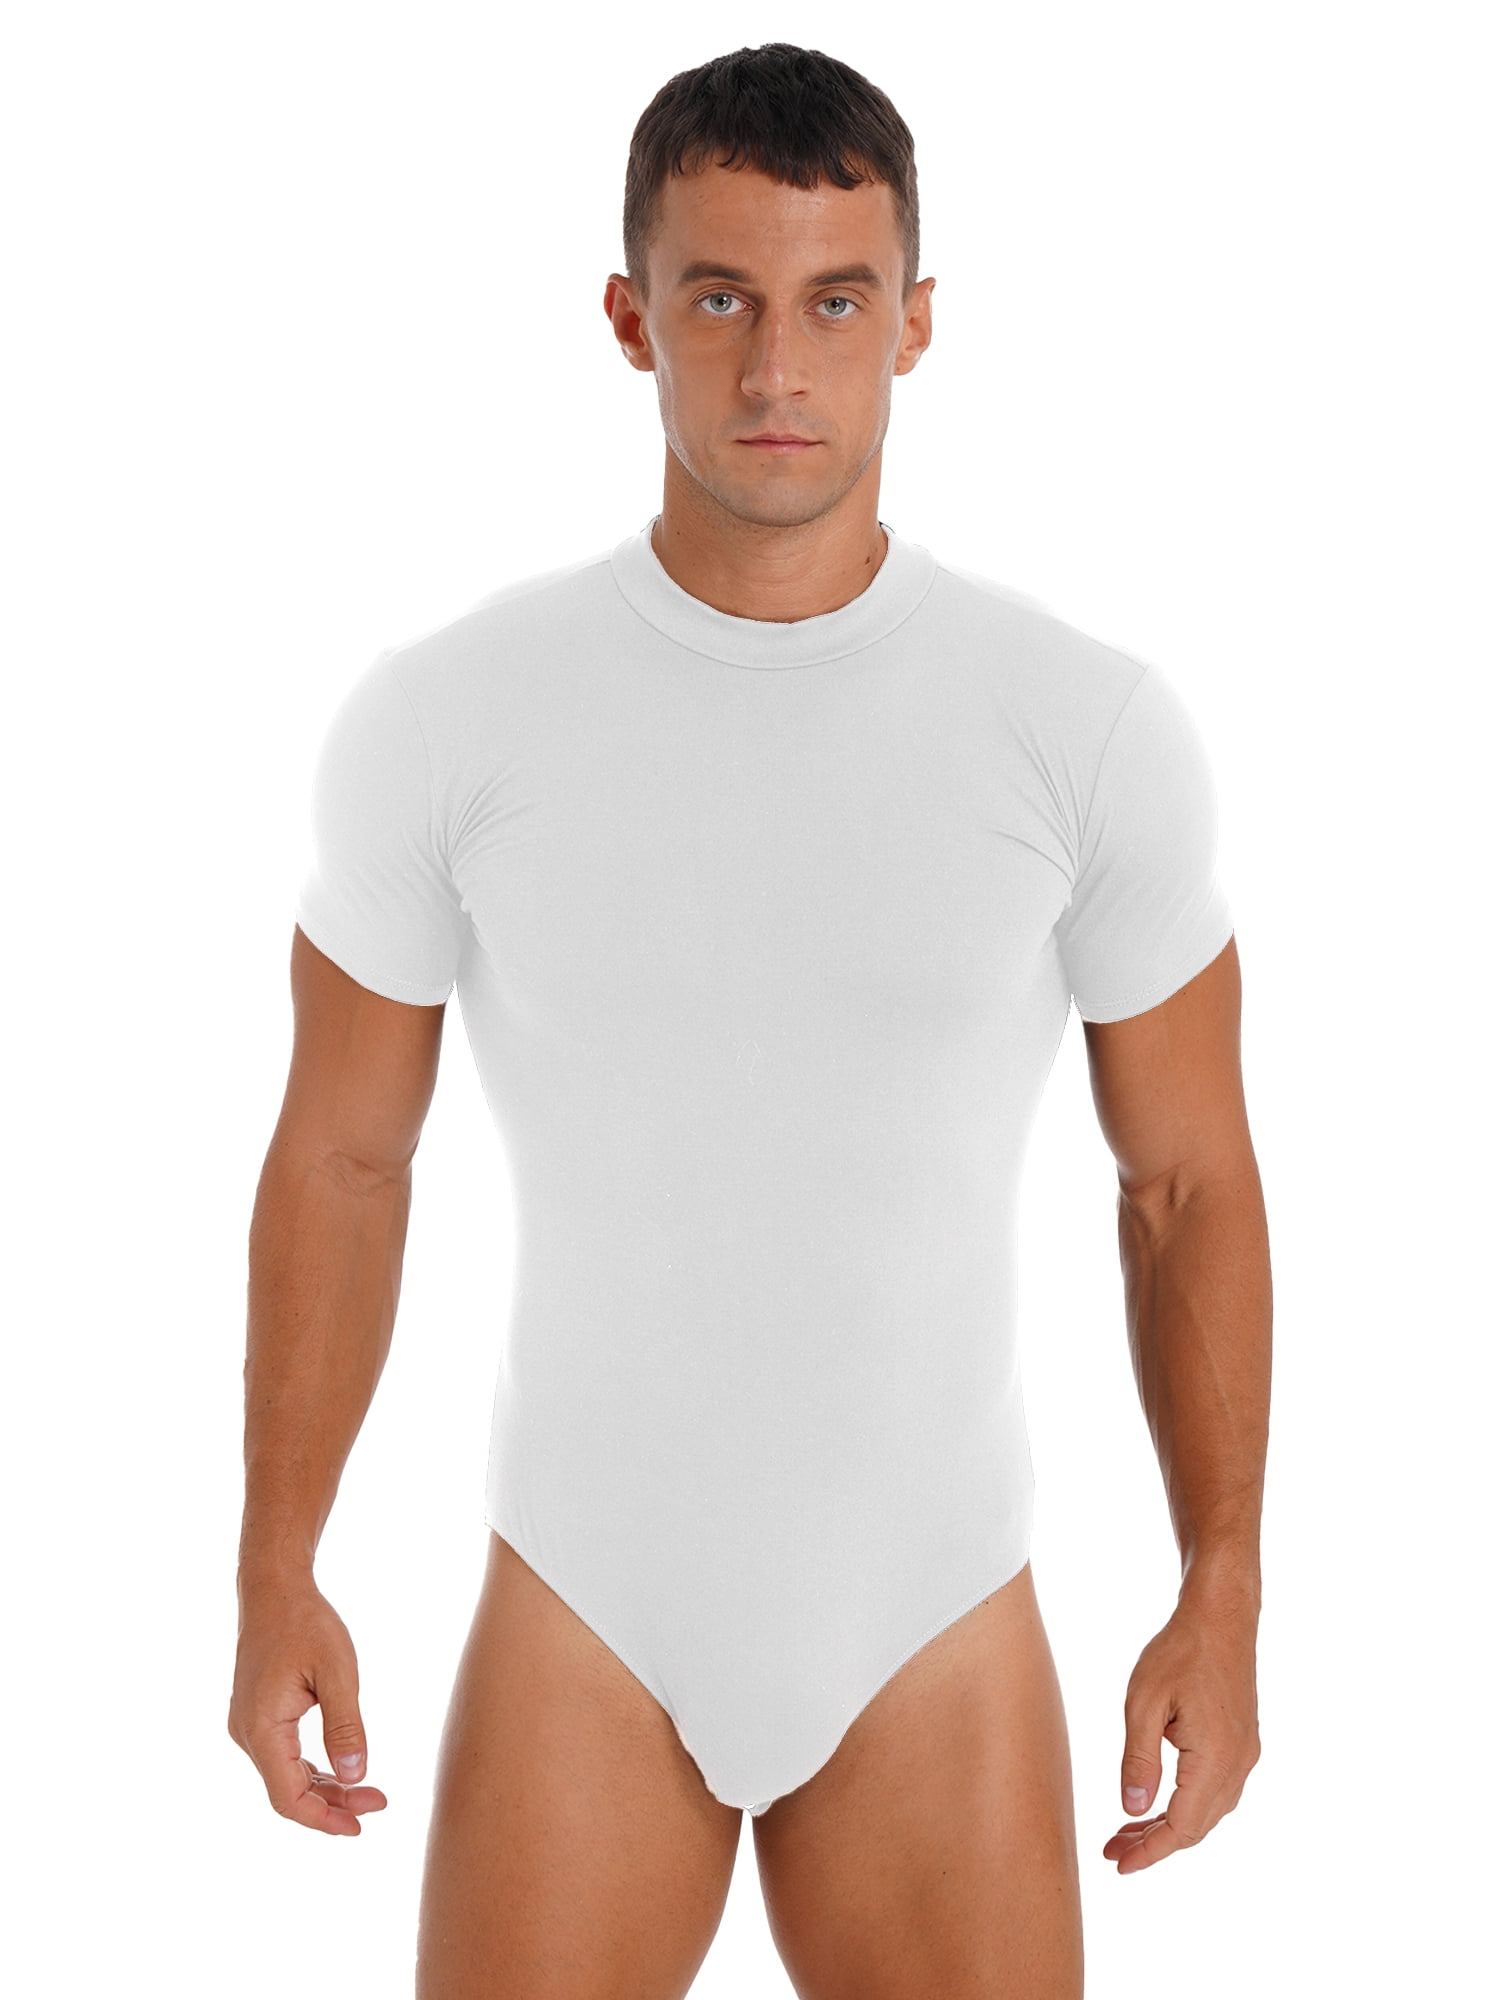 WMIERFI Men's Wrestling Singlet Athletic Leotard One Piece Sport Bodysuit  Gym Outfit Active Underwear, White, Medium : : Sports & Outdoors